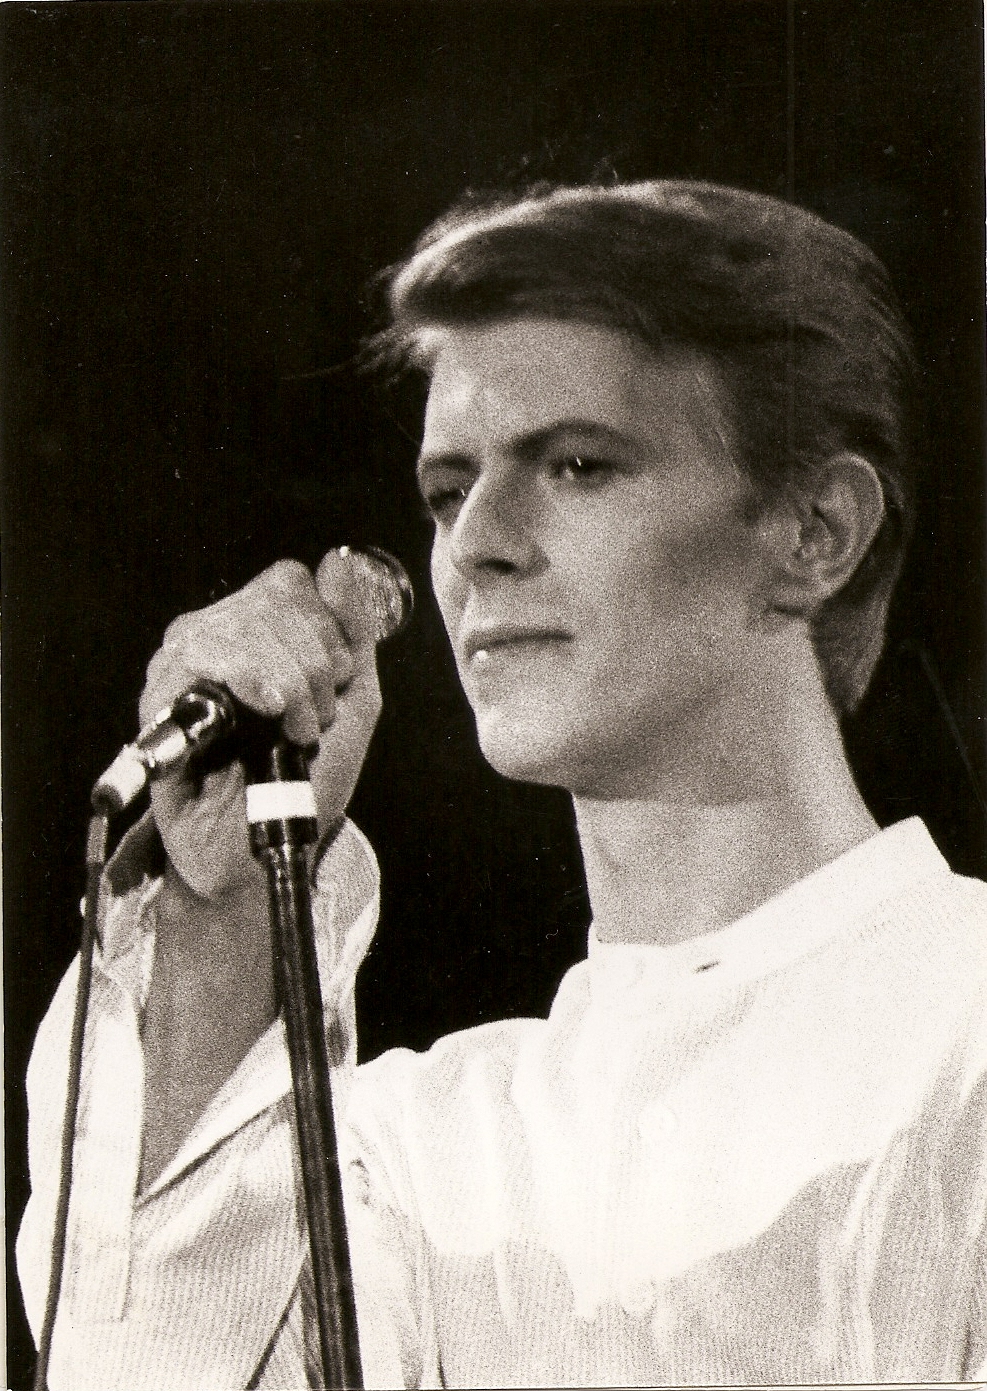 David Bowie - Heroes tour - 1978 - Paris Zénith